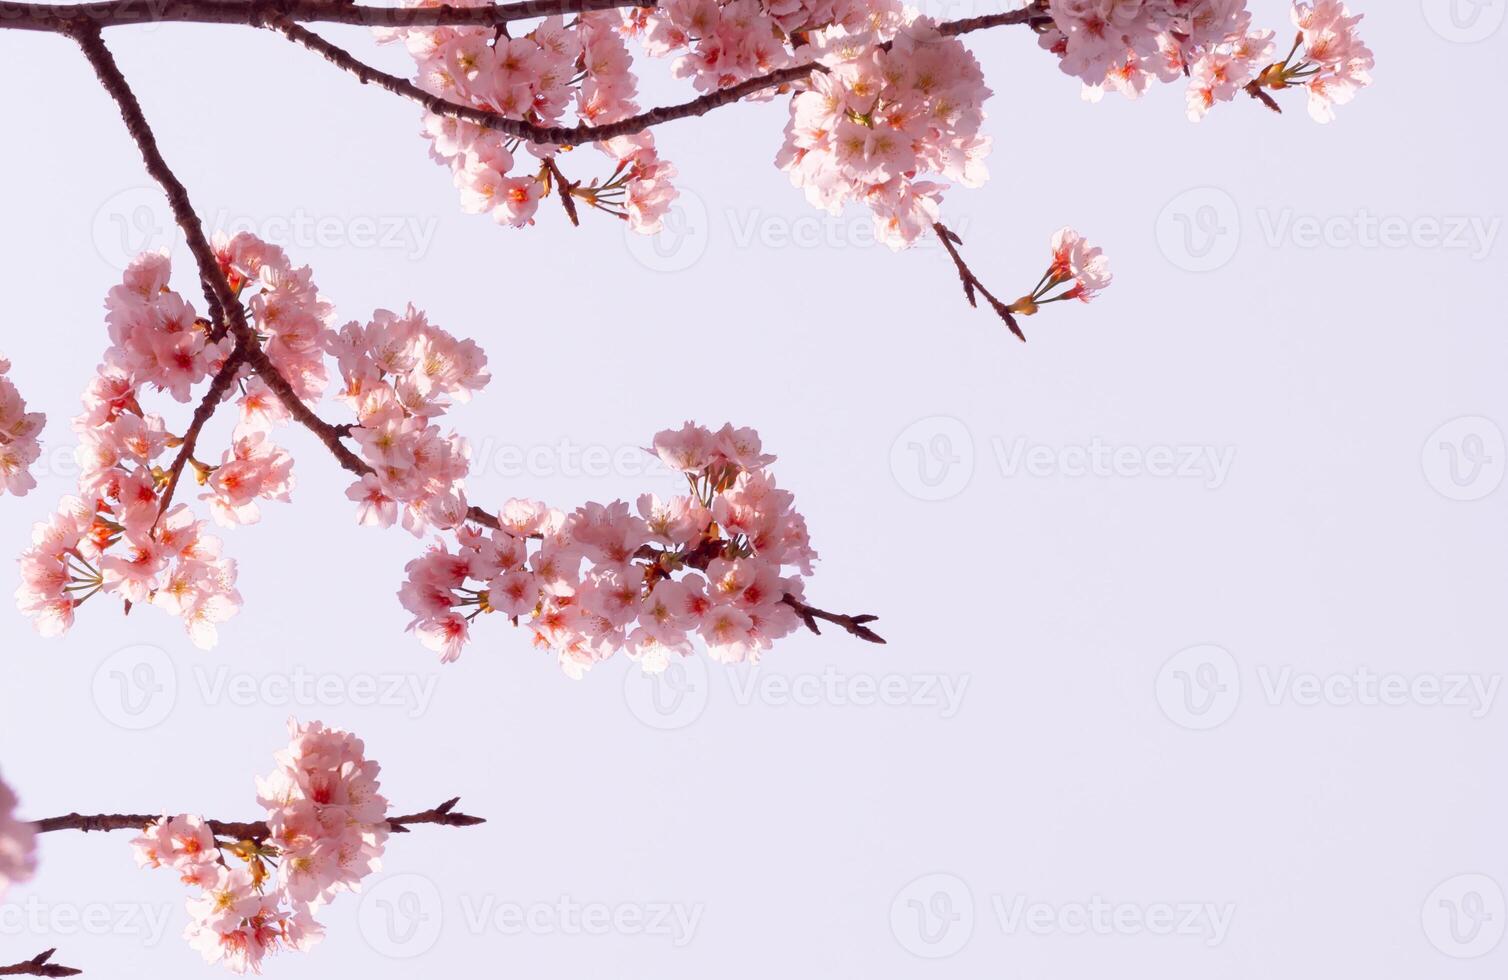 mooi kers bloesem sakura bloeiend met vervagen in pastel roze sakura bloem, vol bloeien een voorjaar seizoen in Japan foto